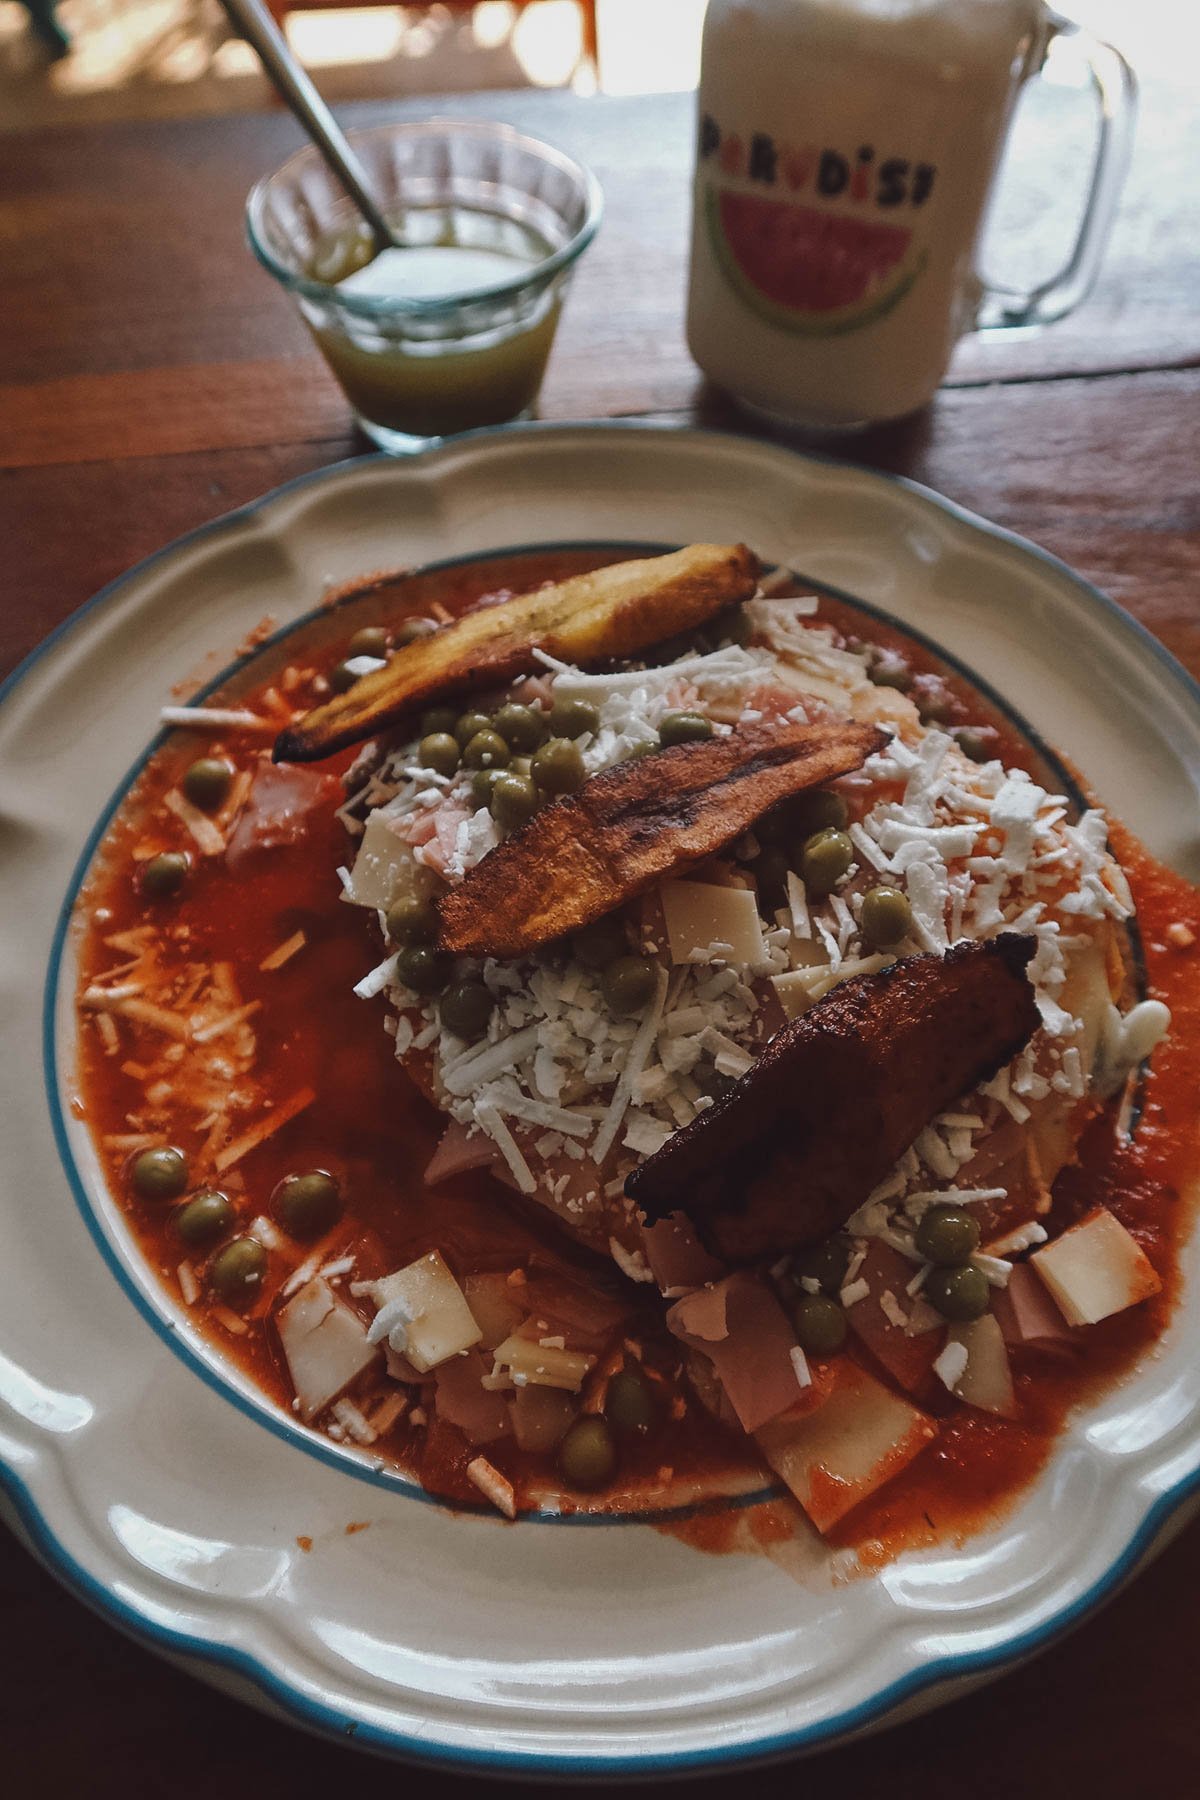 Huevos motuleños, a popular Mexican breakfast dish